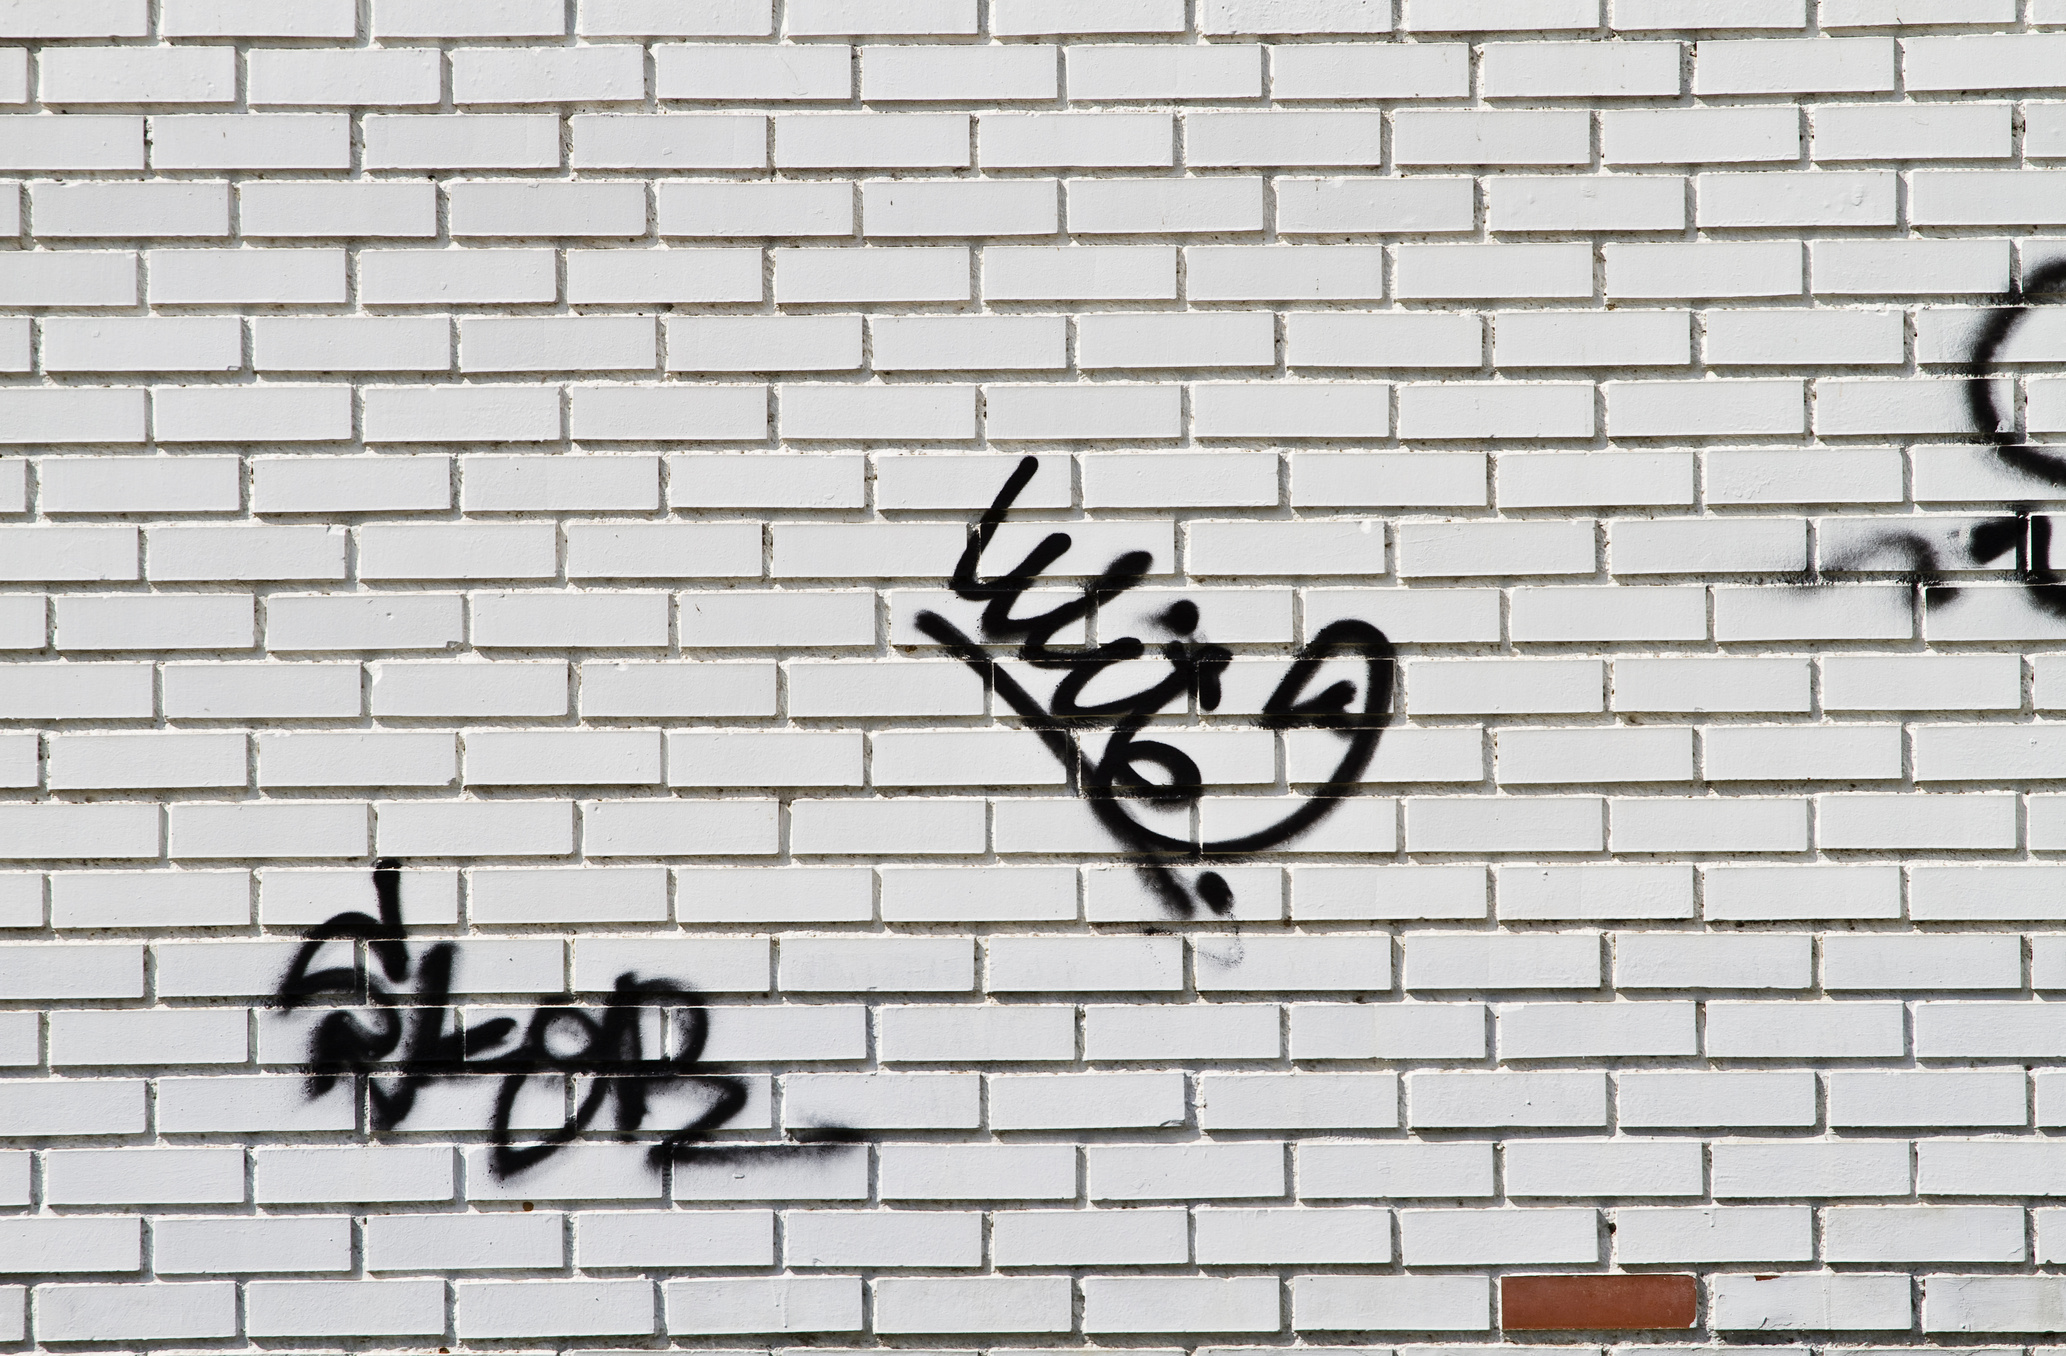 Graffiti on Wall